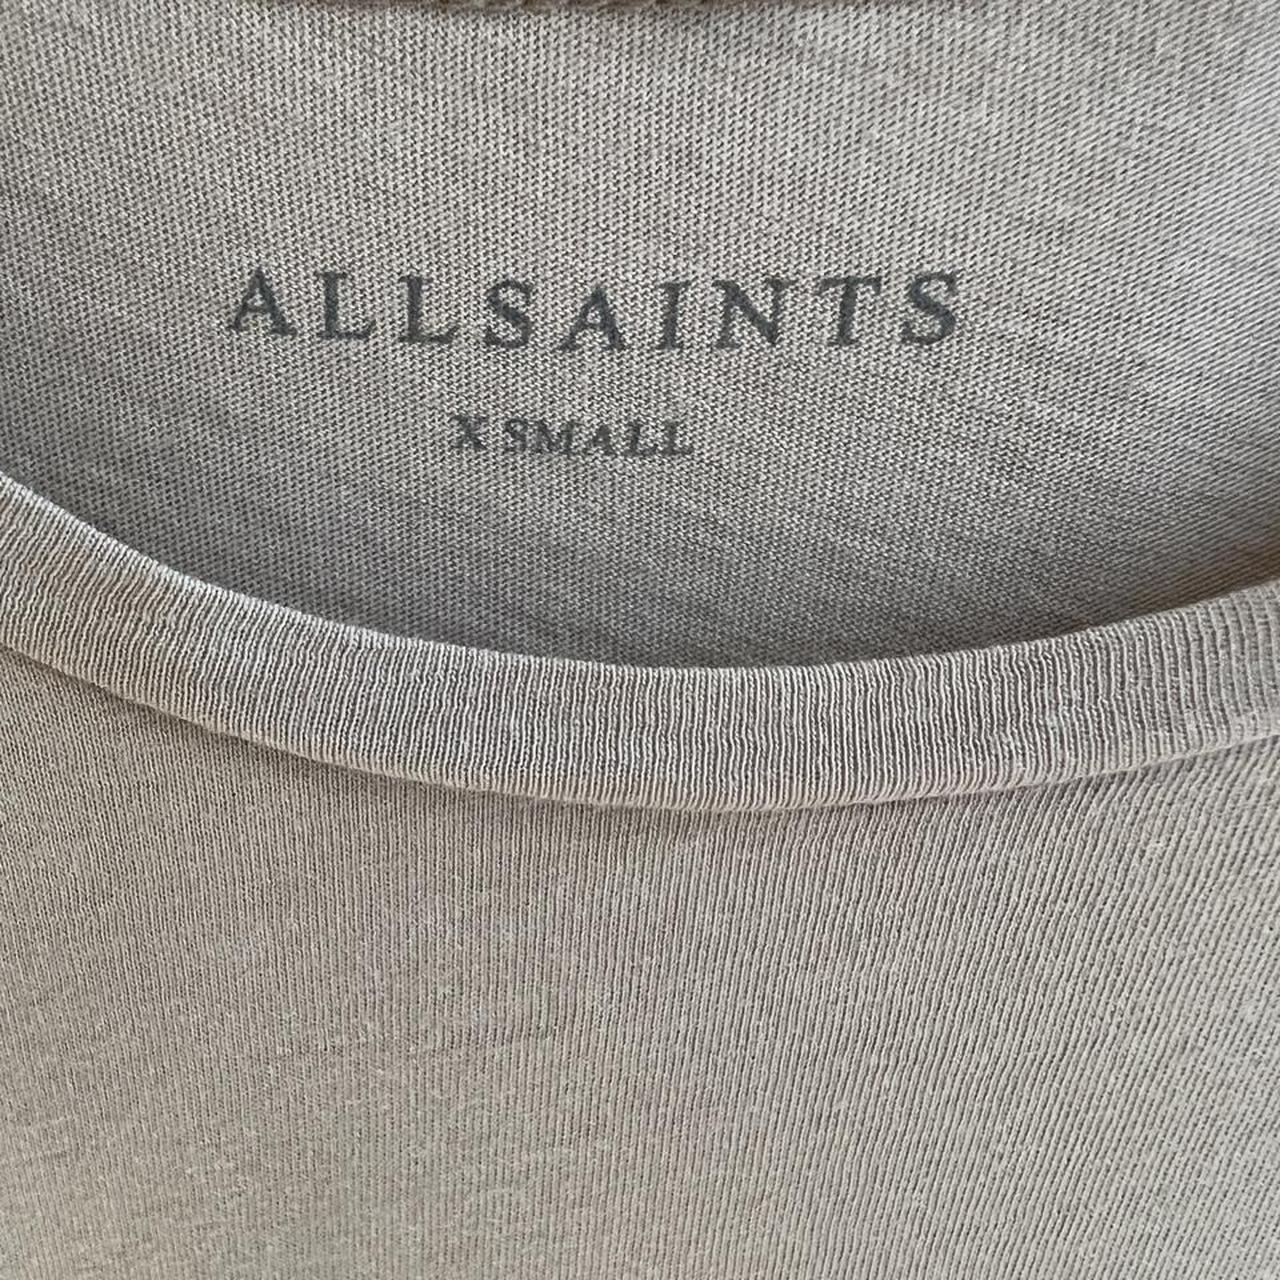 AllSaints Men's Tan and Cream T-shirt | Depop